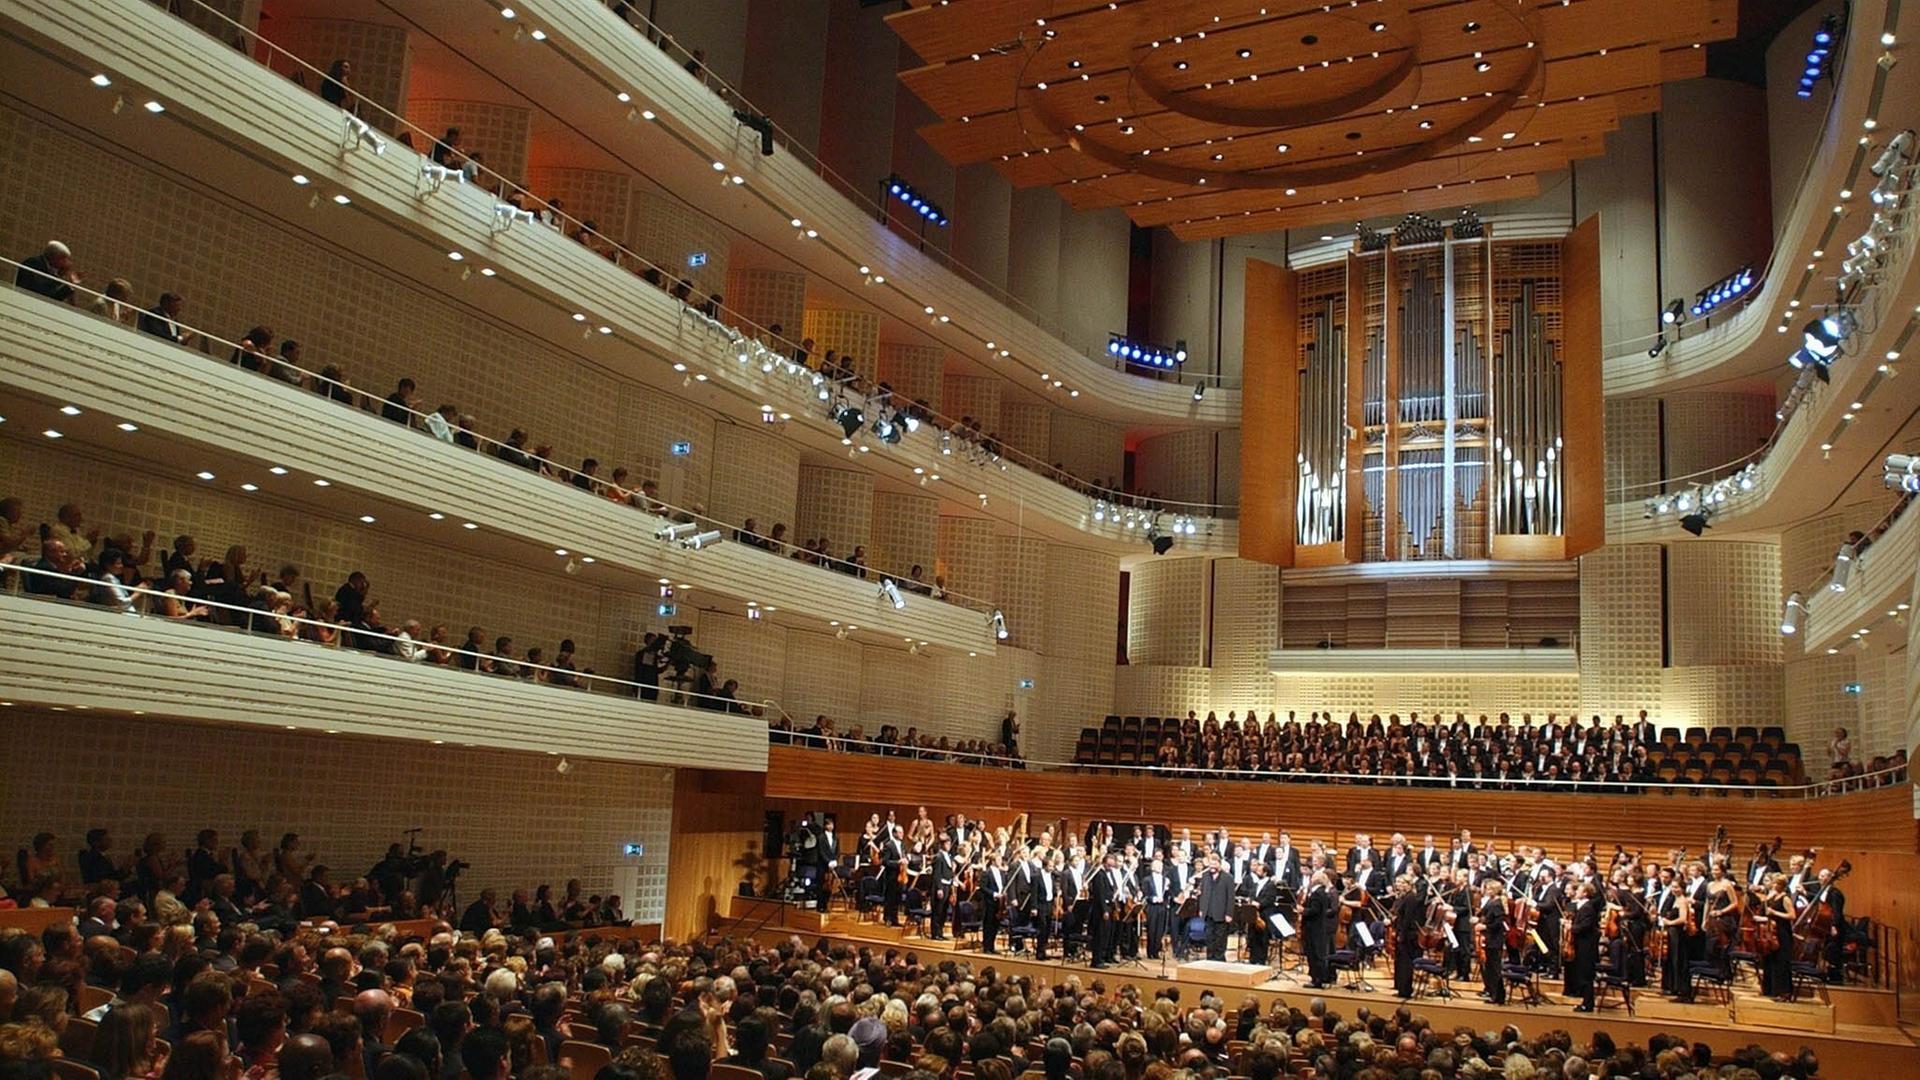 Ein voll besetzter Konzertsaal mit großer Orgel und beleuchteten Rängen. Das Orchester und der Chor stehen.